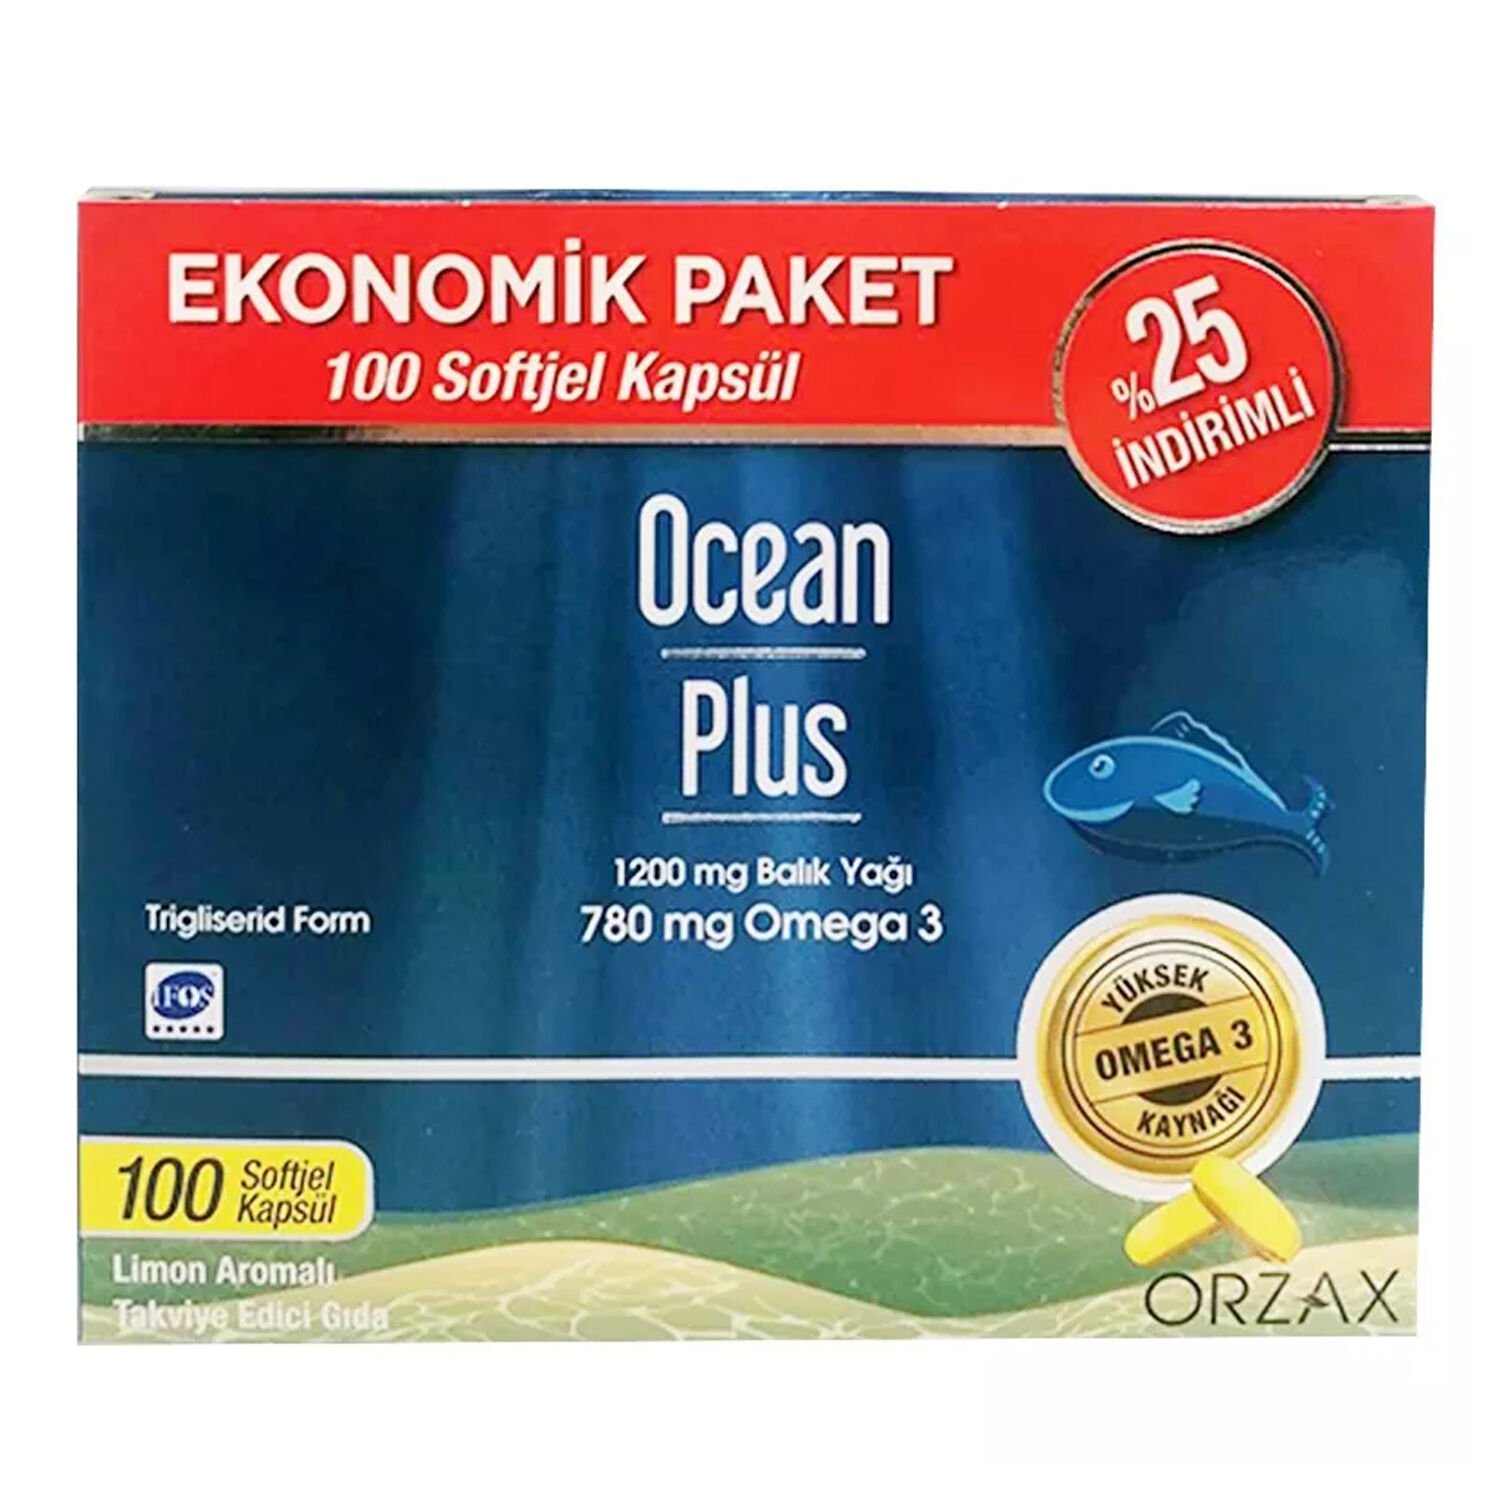 Ocean Plus 1200 mg Balık Yağı 100 Kapsül Ekonomik Paket